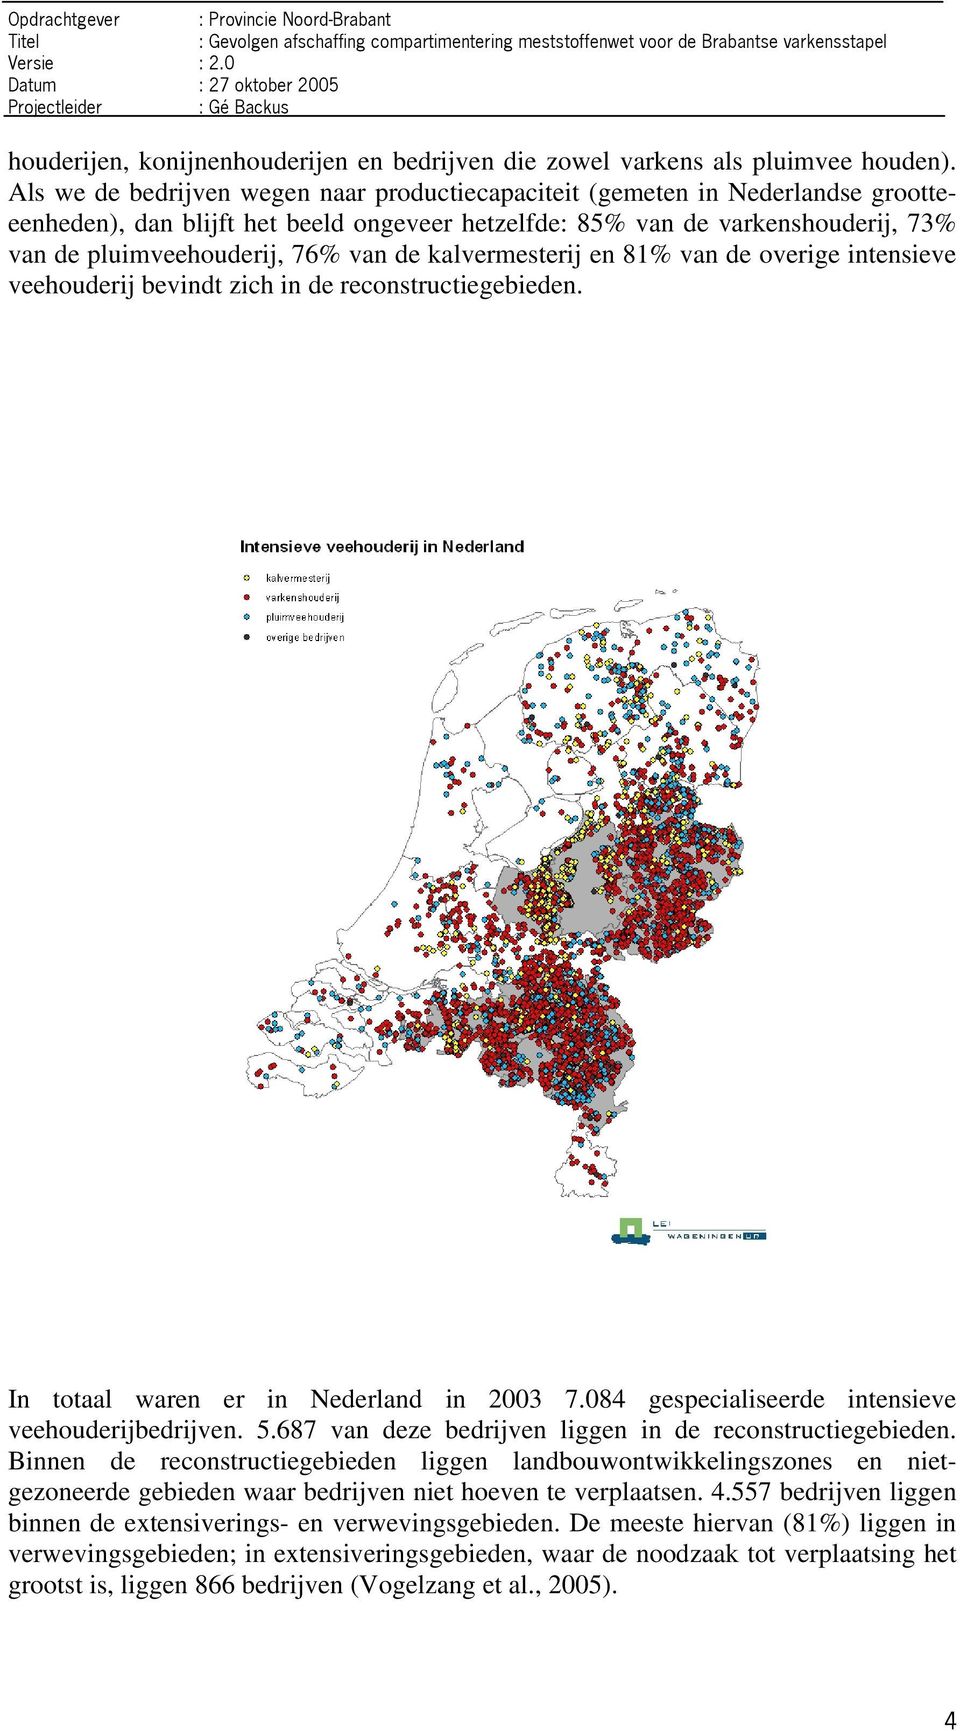 de kalvermesterij en 81% van de overige intensieve veehouderij bevindt zich in de reconstructiegebieden. In totaal waren er in Nederland in 2003 7.084 gespecialiseerde intensieve veehouderijbedrijven.